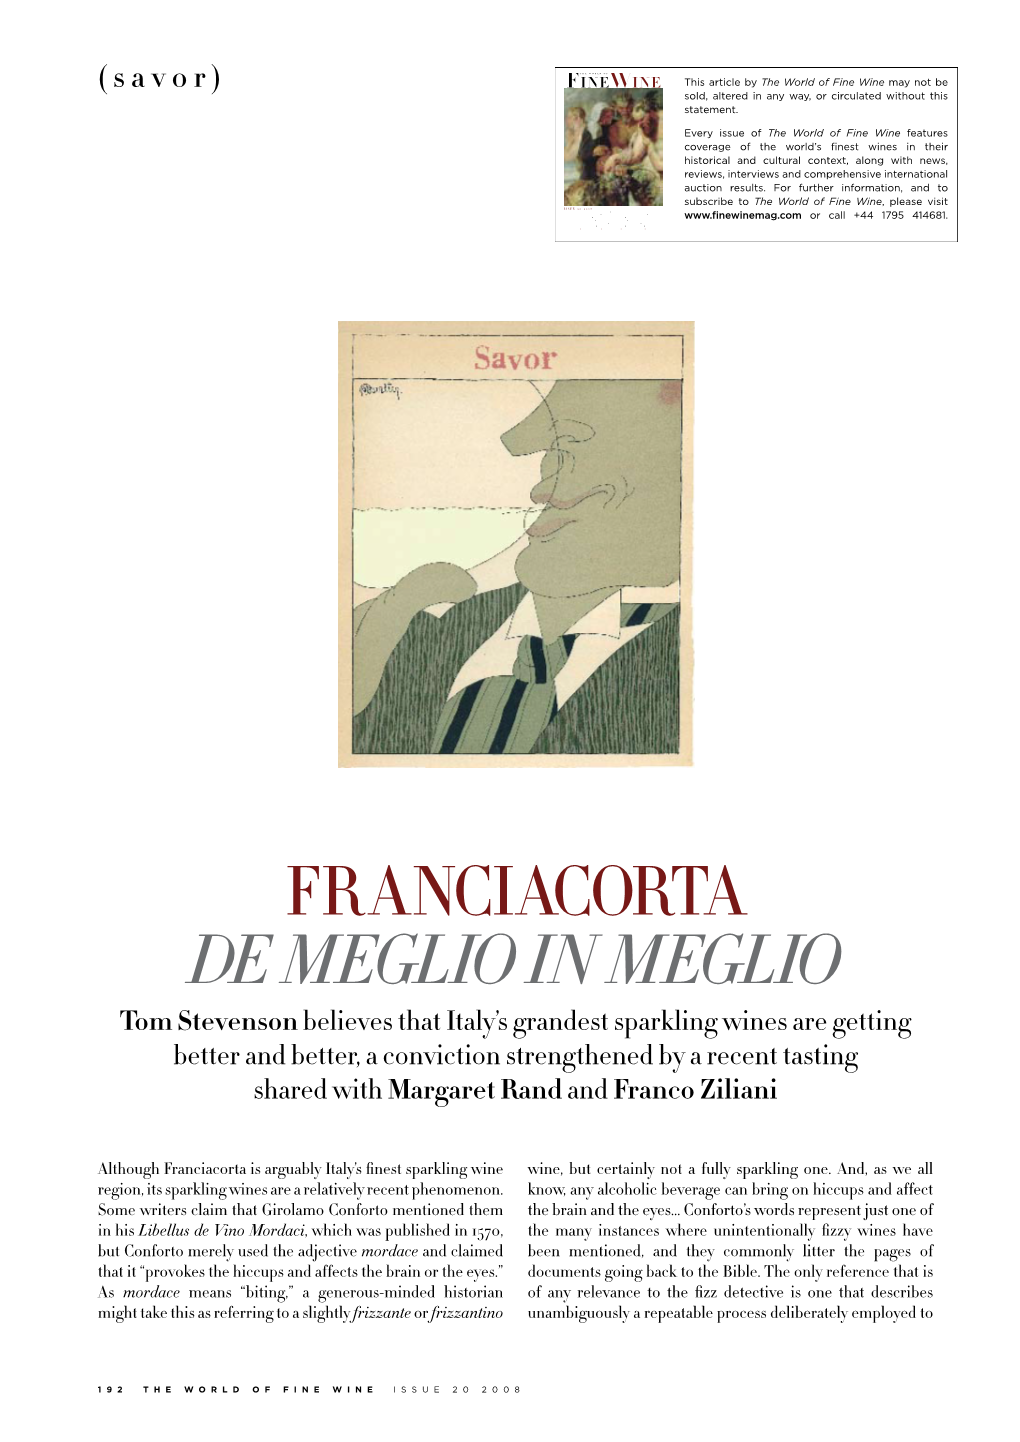 Panel Tasting: Franciacorta De Meglio in Meglio